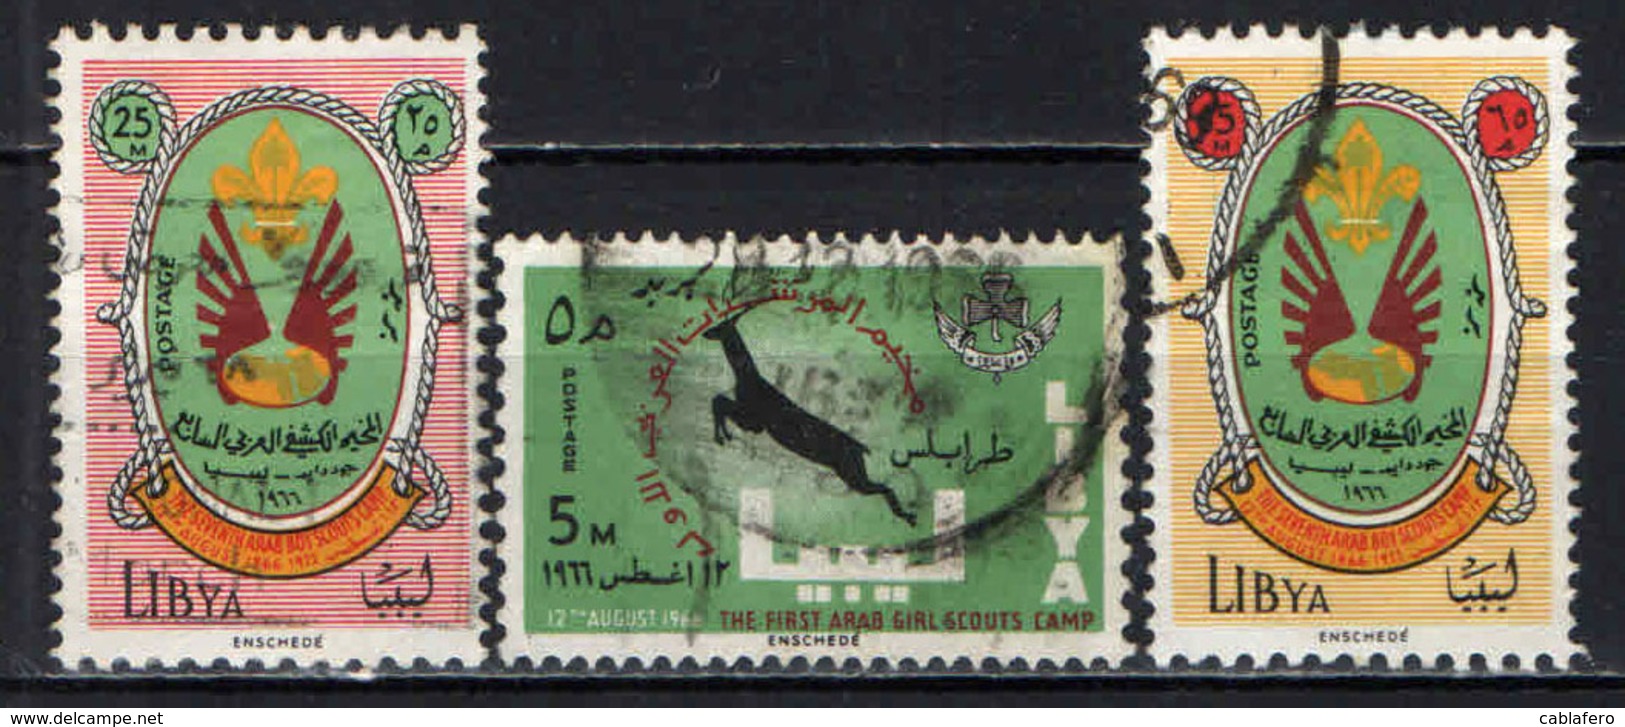 LIBIA - 1966 - SCOUTISMO - USATI - Libia